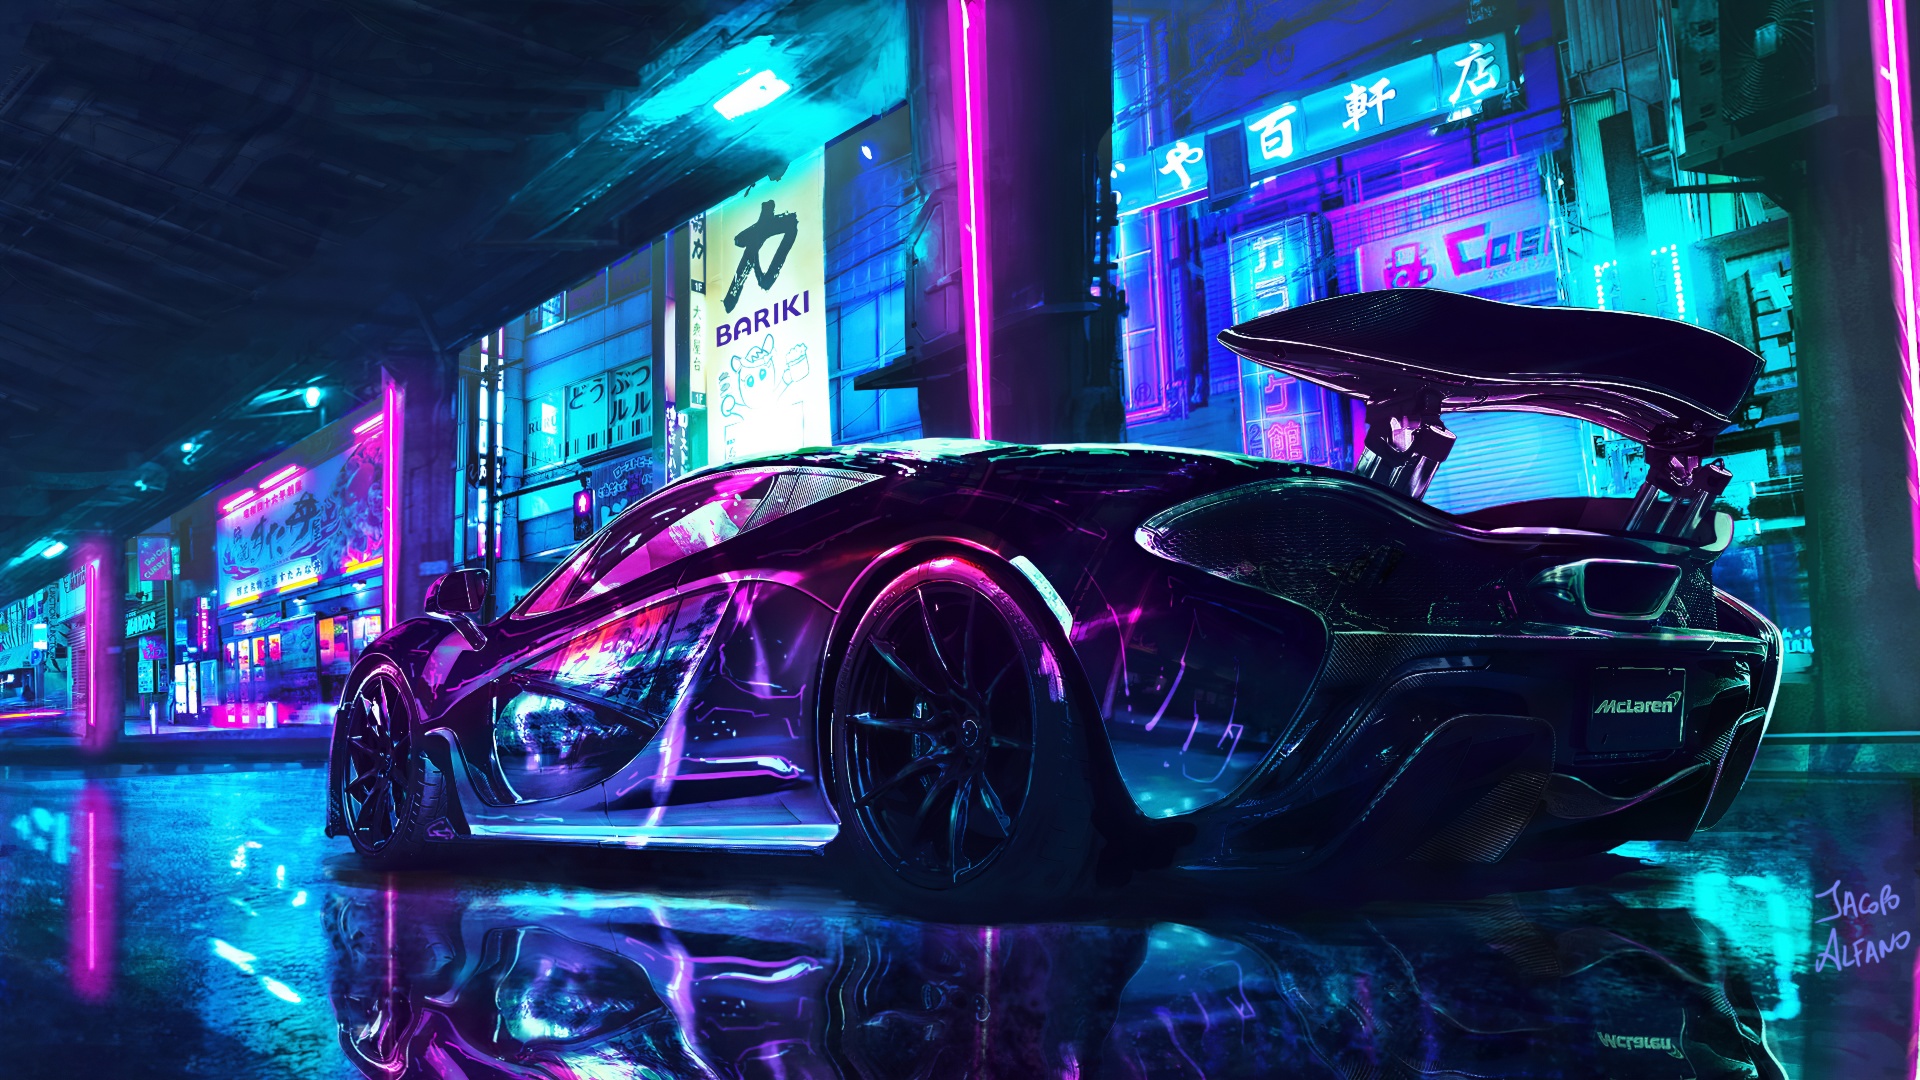 Hình ảnh Cyberpunk với xe McLaren siêu đẳng sẽ khiến bạn trở nên đặc biệt và nổi bật hơn. Nếu bạn là một game thủ hay đang tìm kiếm một bộ sưu tập hình ảnh độc đáo, hãy tải ngay hình nền này và tận hưởng hiệu ứng 4K tuyệt vời!